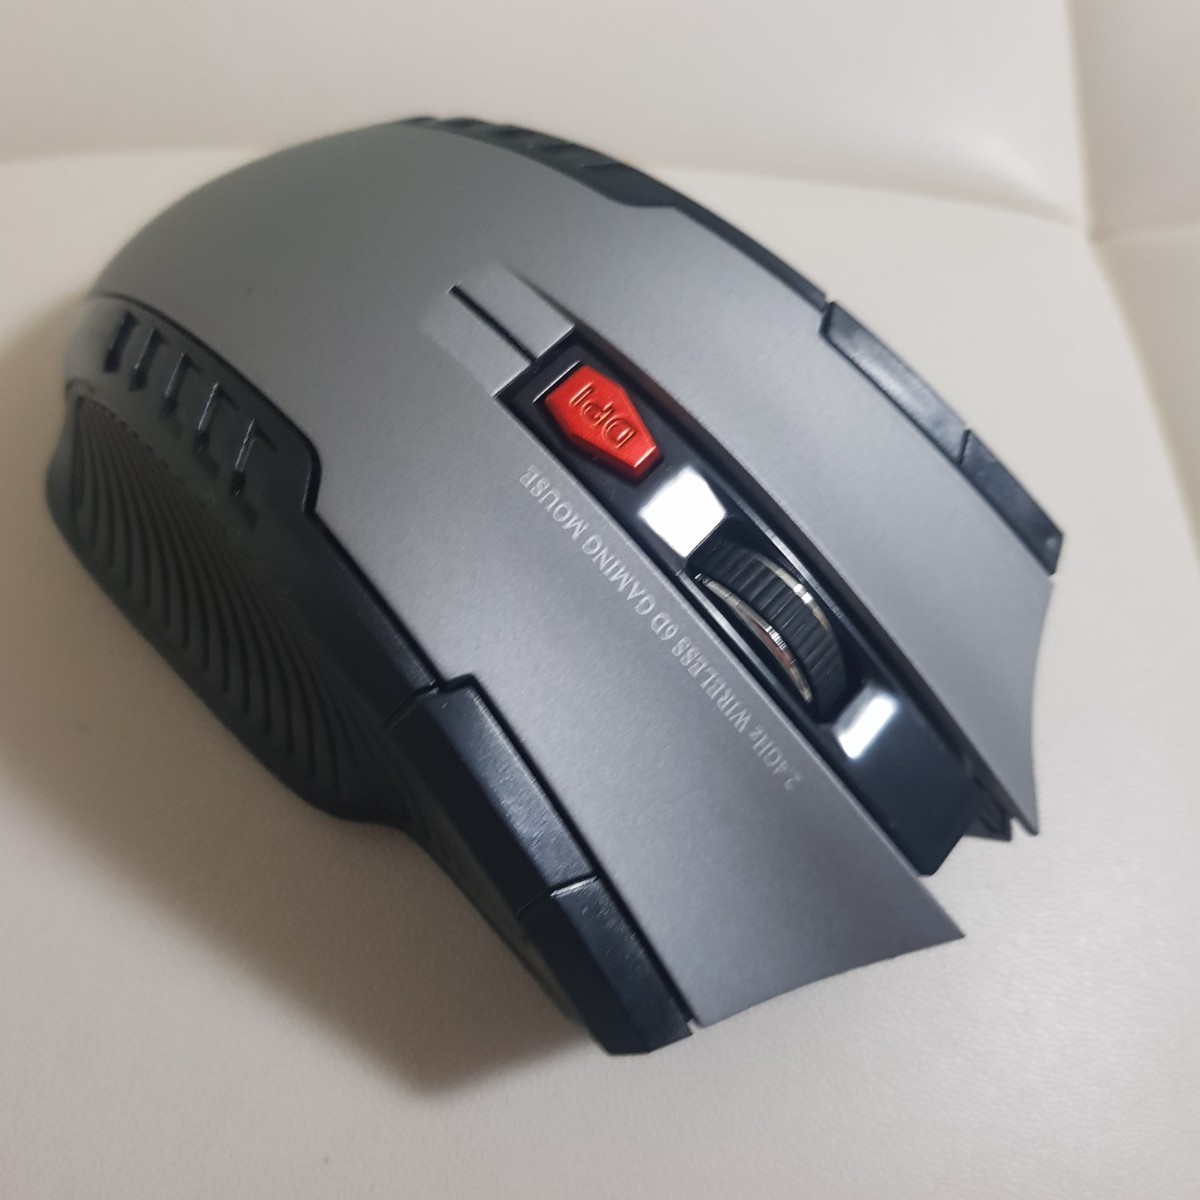 ワイヤレス マウス ゲーミングマウス レーザー USB 無線 シルバー  グレー